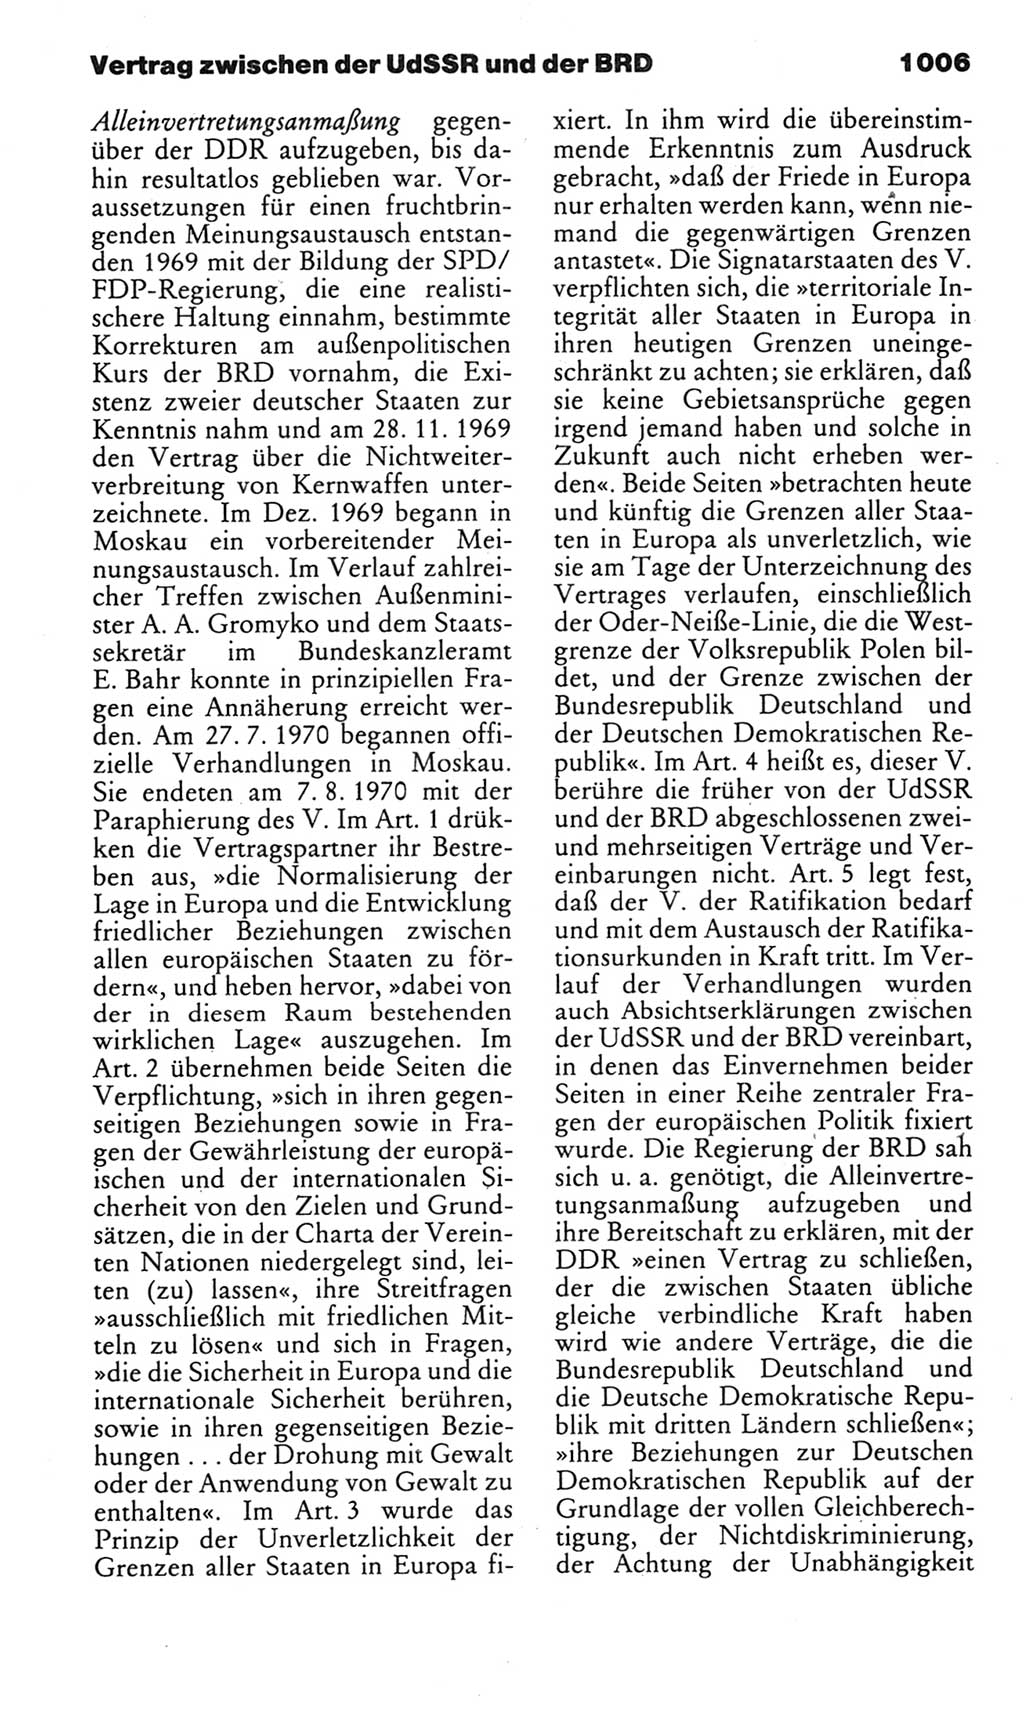 Kleines politisches Wörterbuch [Deutsche Demokratische Republik (DDR)] 1985, Seite 1006 (Kl. pol. Wb. DDR 1985, S. 1006)